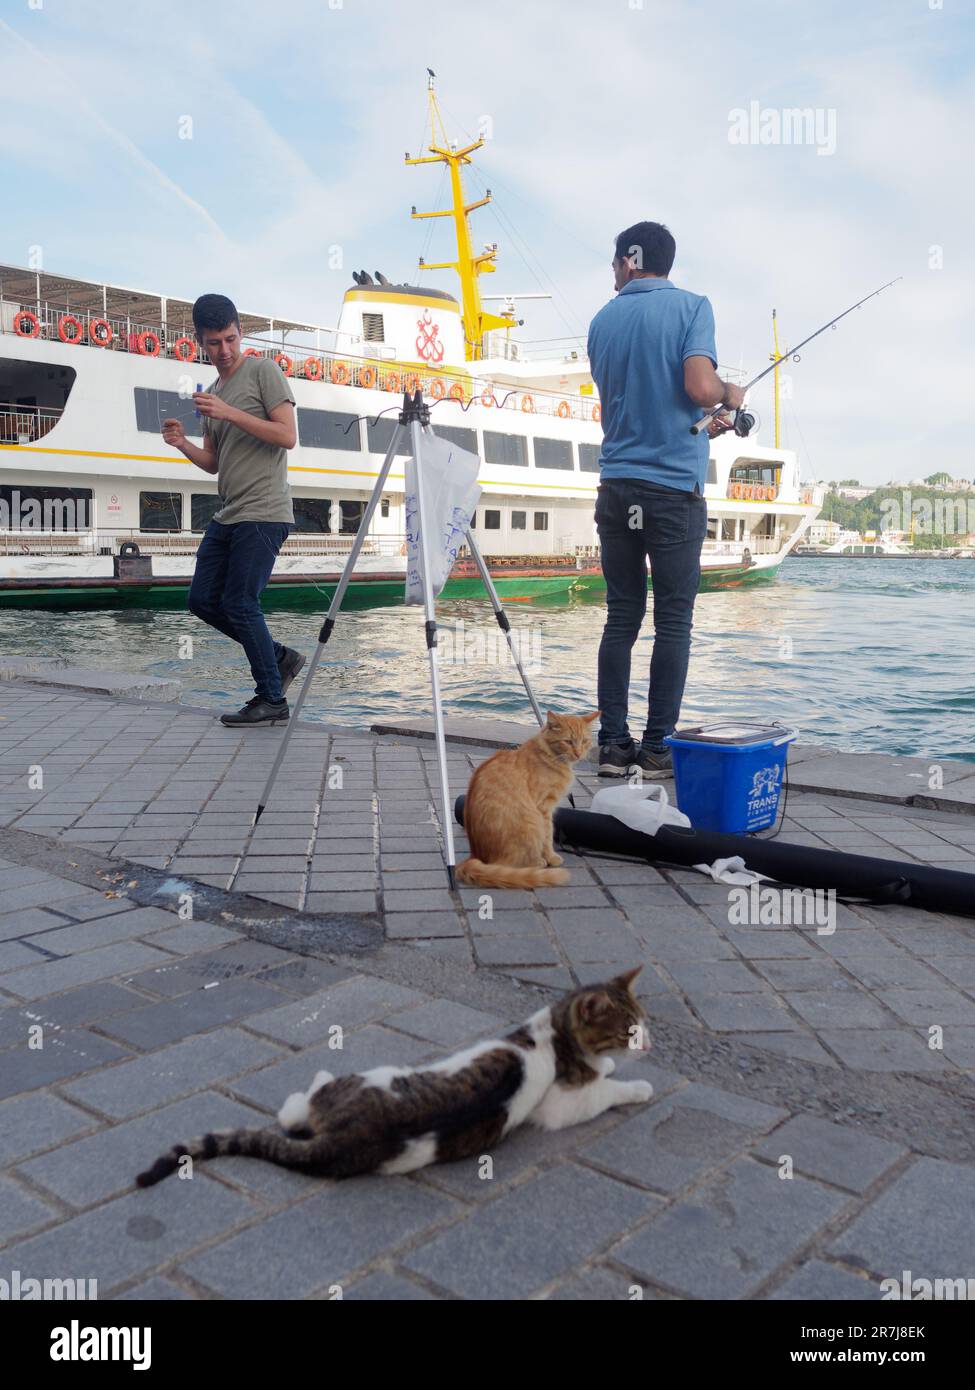 Zwei Männer fischen auf dem Goldenen Horn in Karakoy, zwei Katzen im Vordergrund und ein Passagierfährschiff dahinter. Istanbul, Türkei Stockfoto